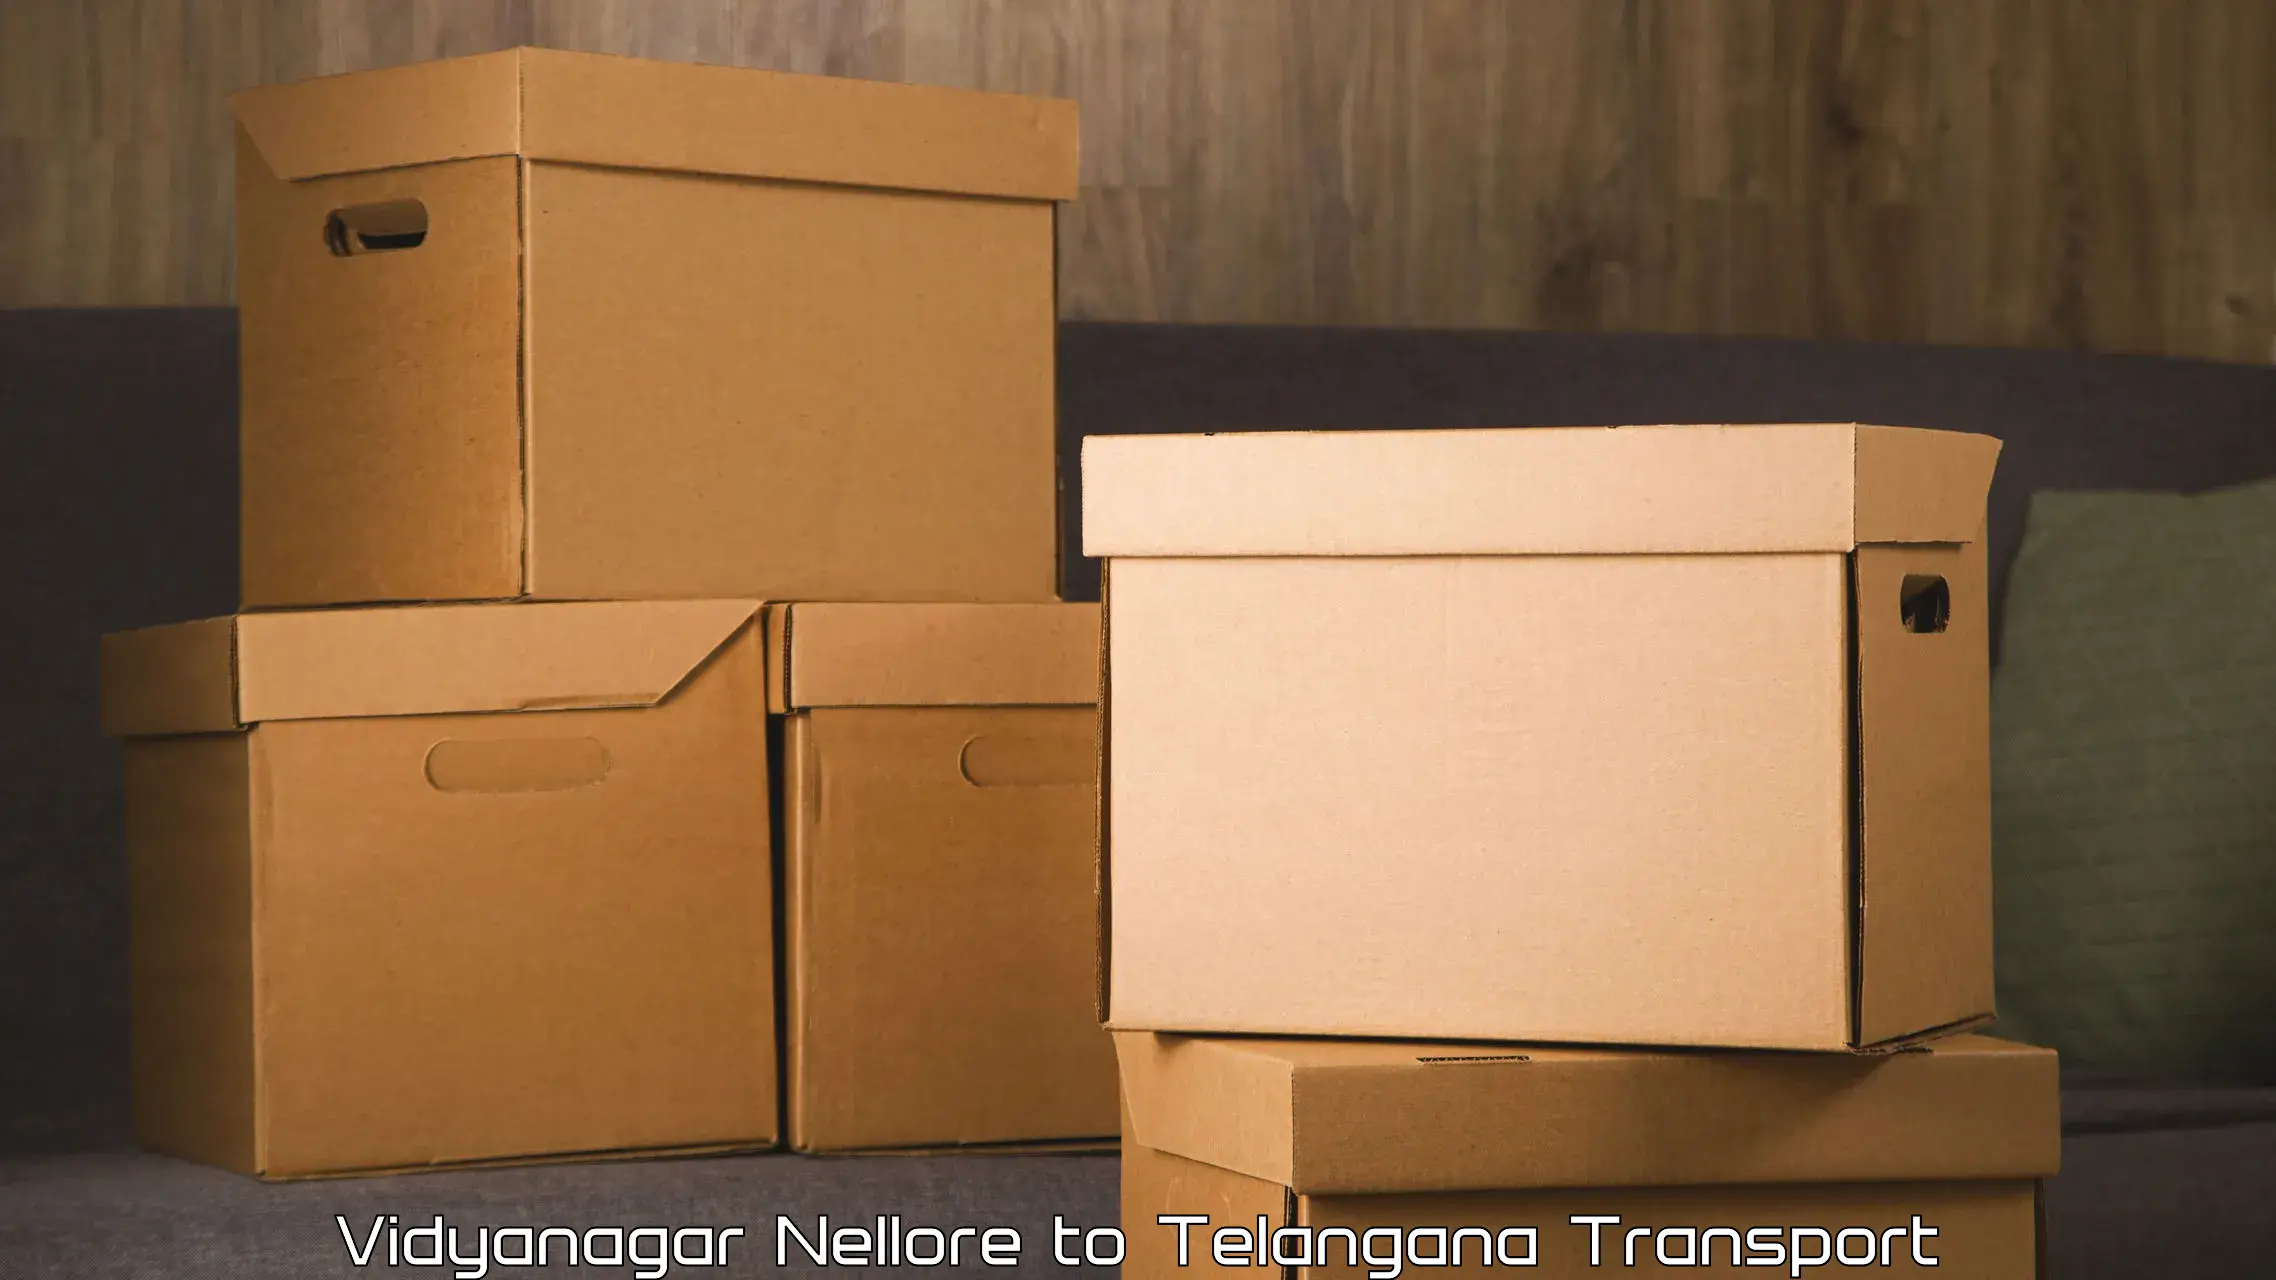 Luggage transport services Vidyanagar Nellore to Shadnagar